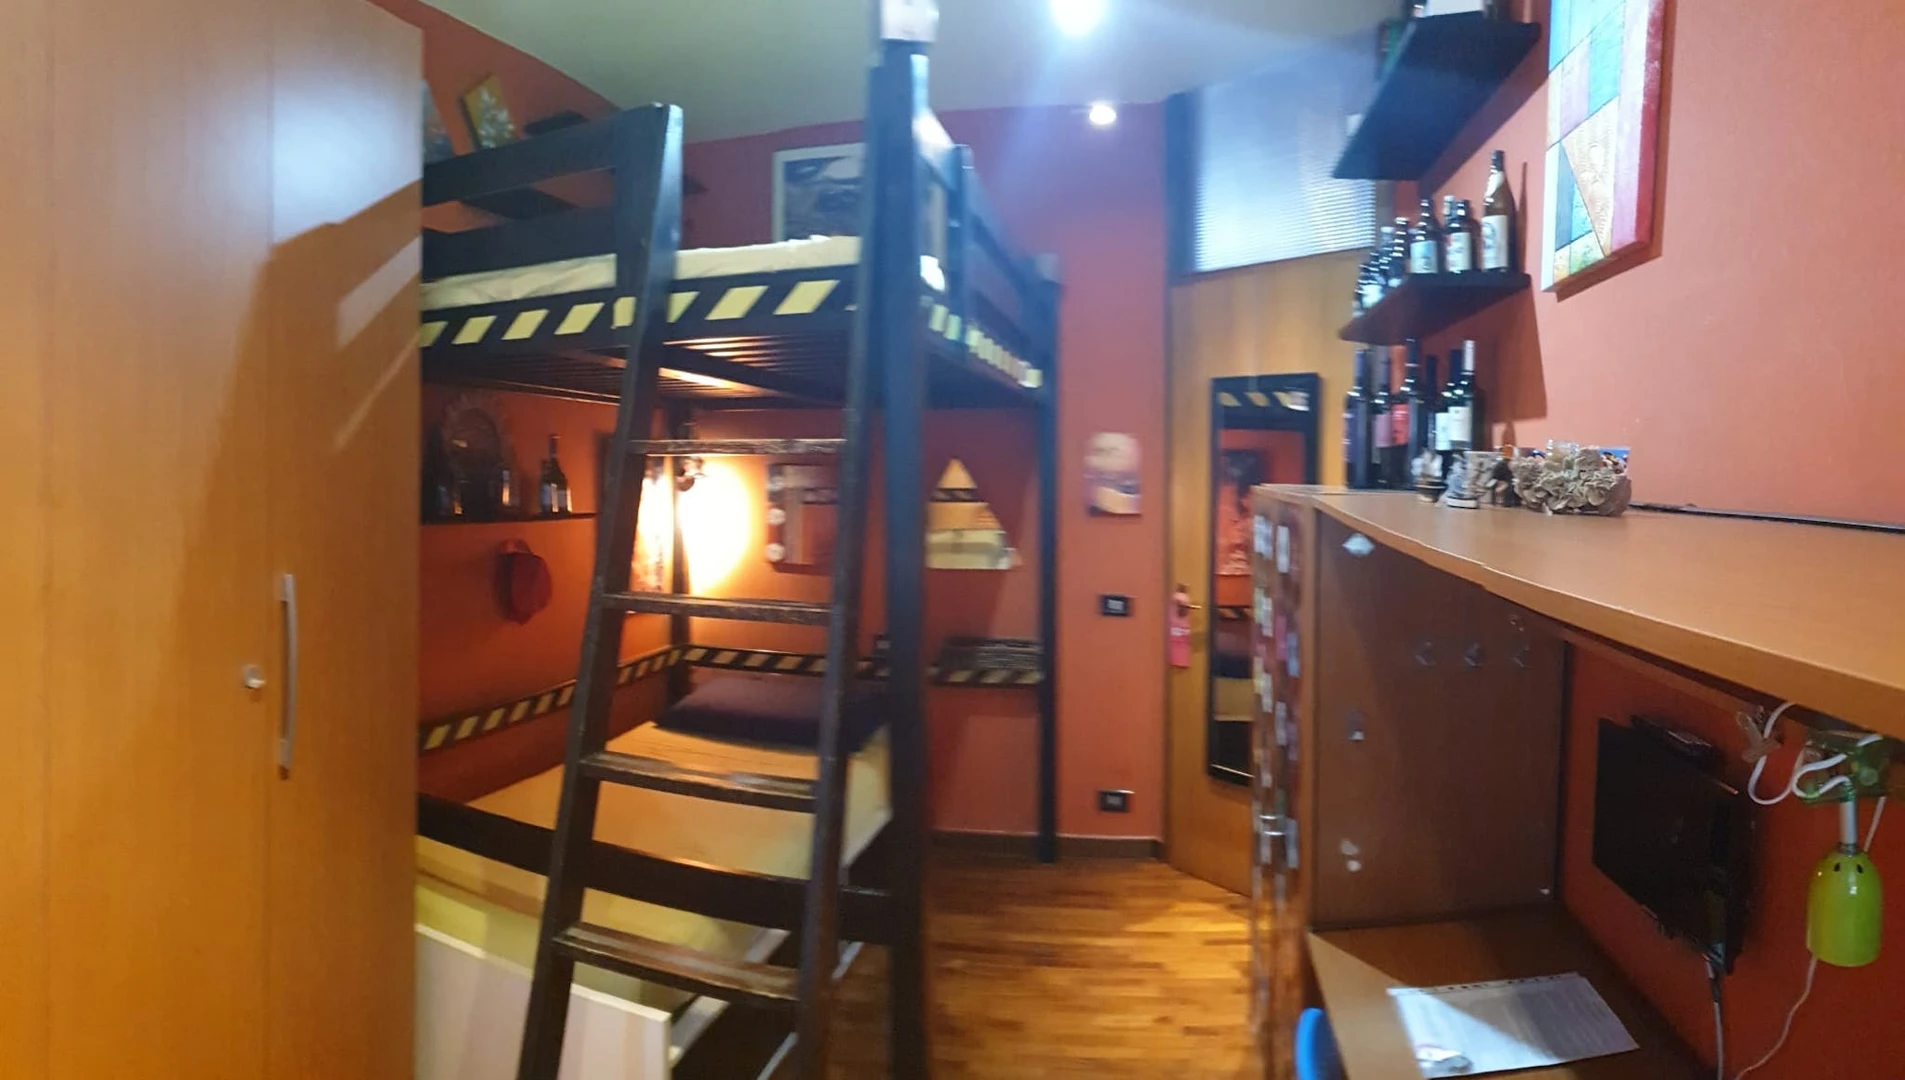 Stanza in condivisione in un appartamento di 3 camere da letto Bergamo